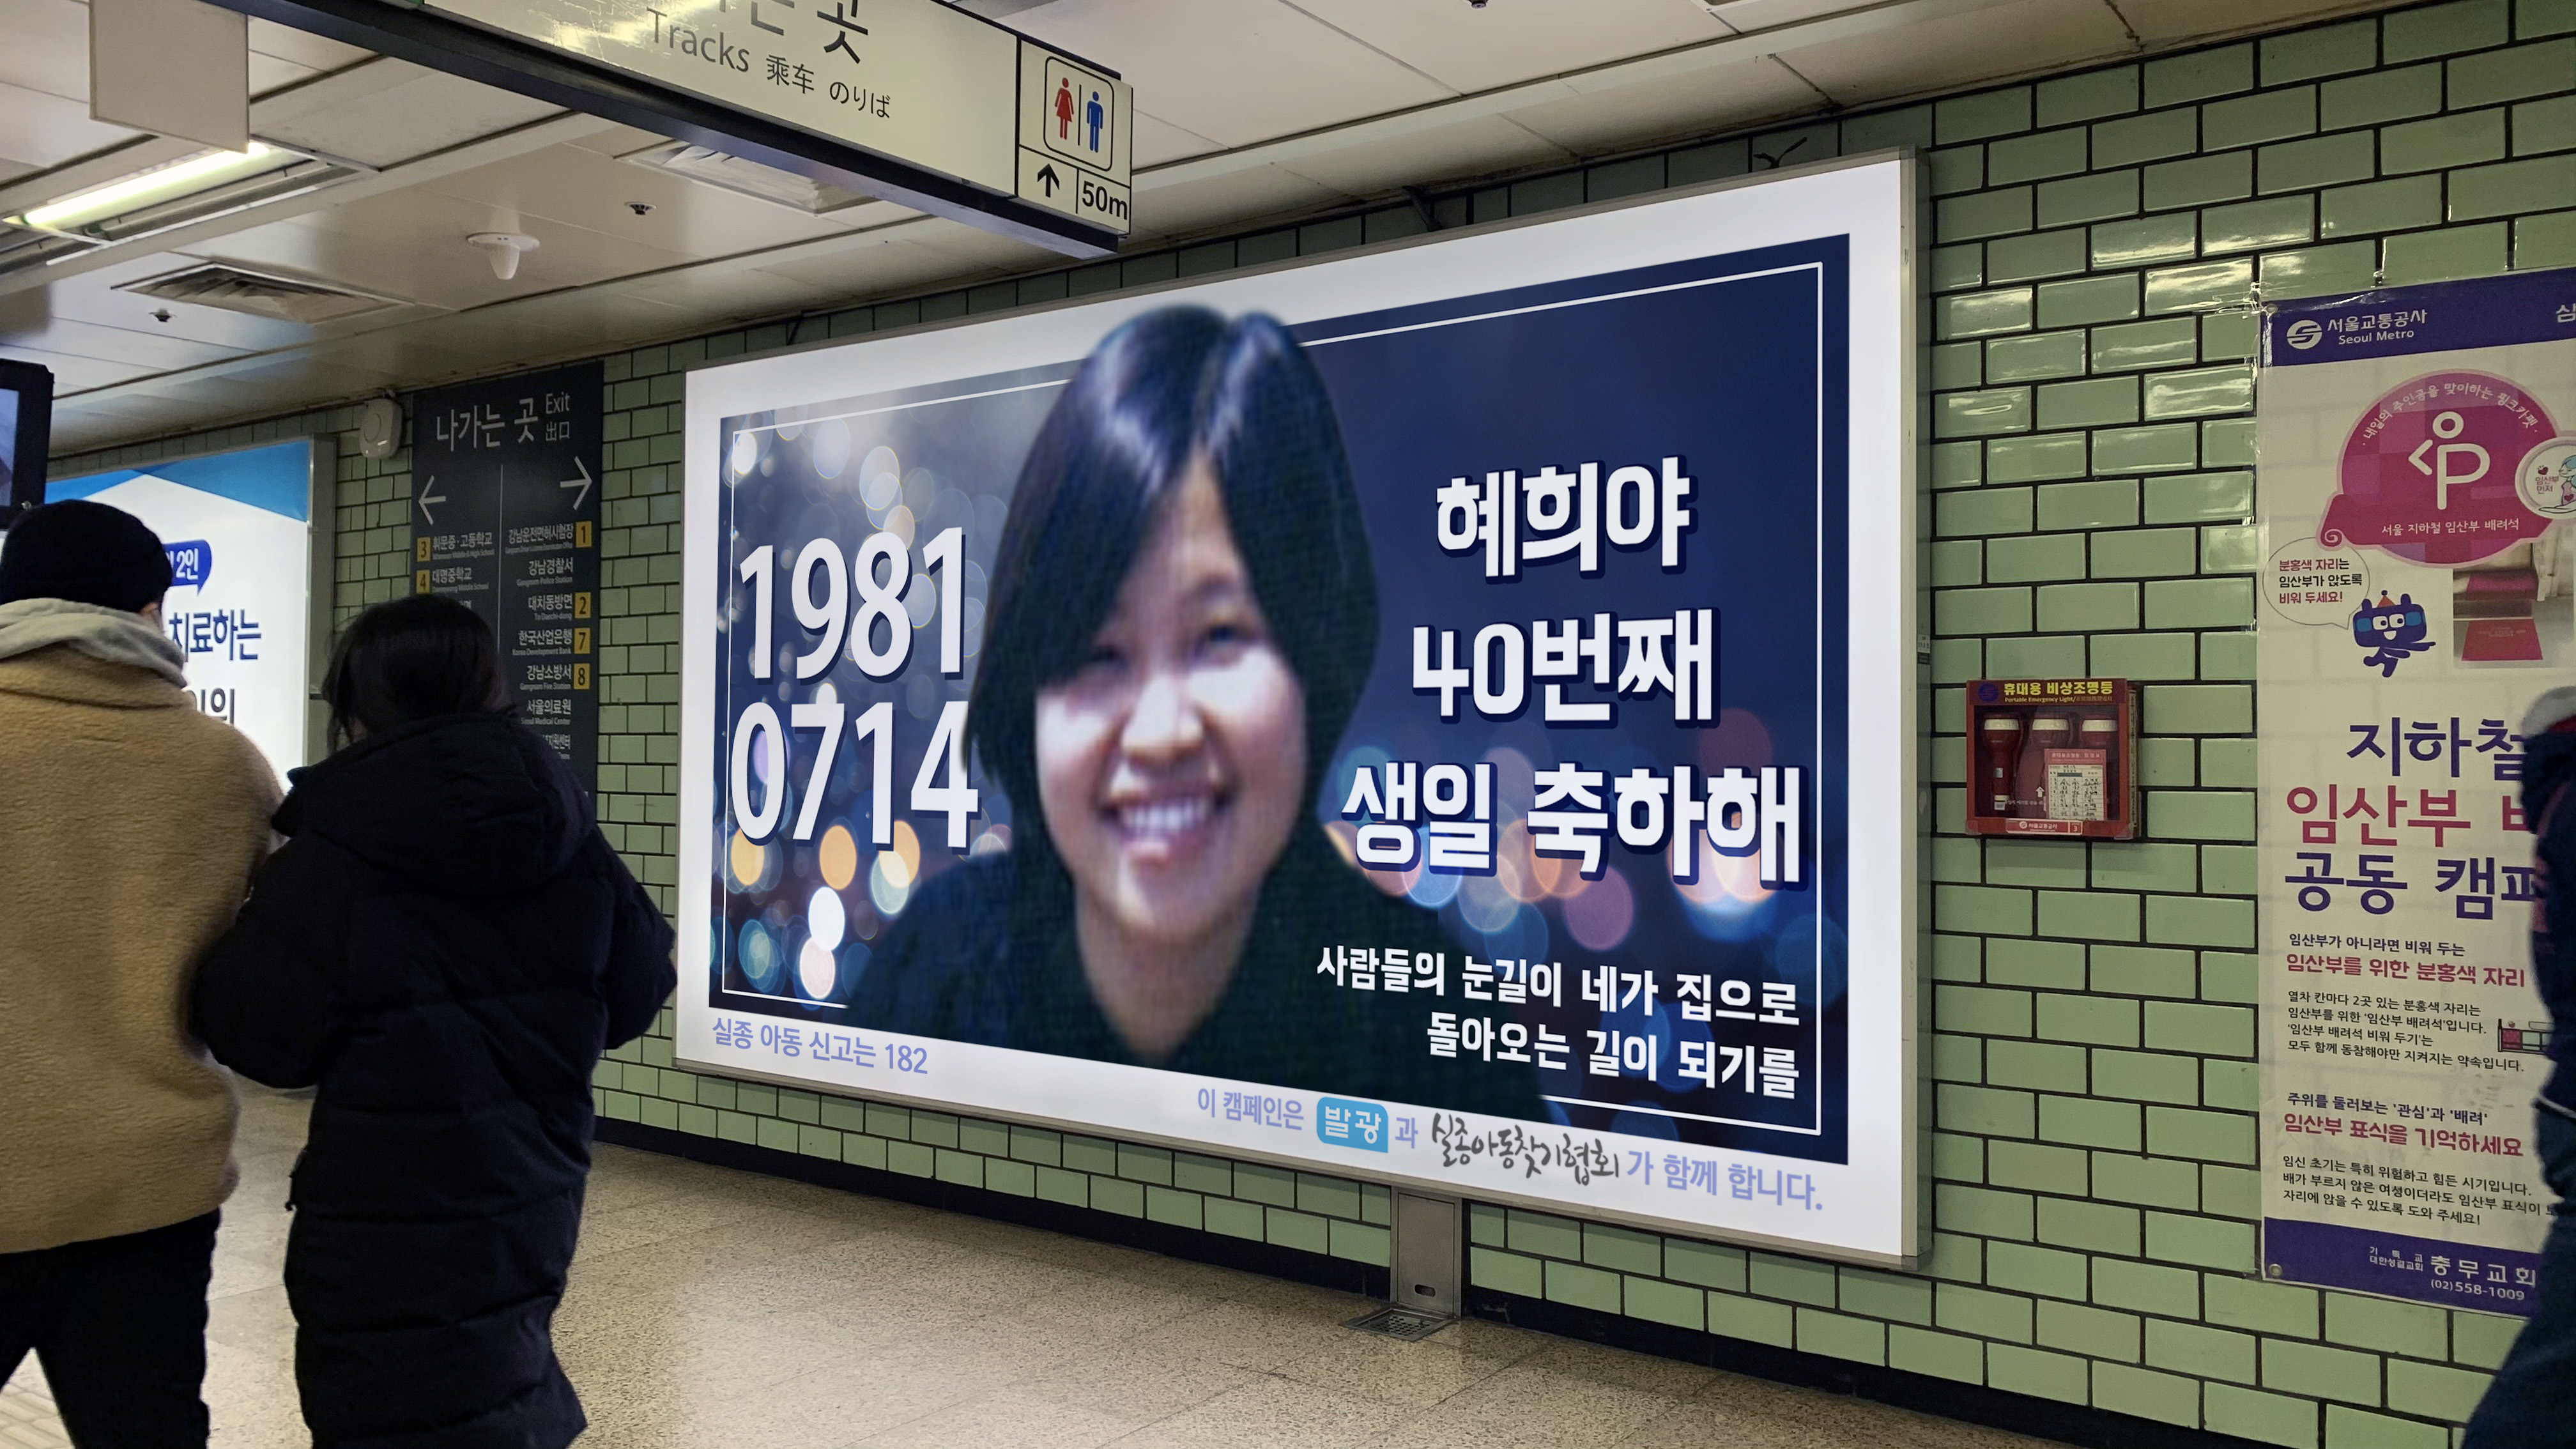 눈물샘 자극한다는 지하철 생일 광고.jpg